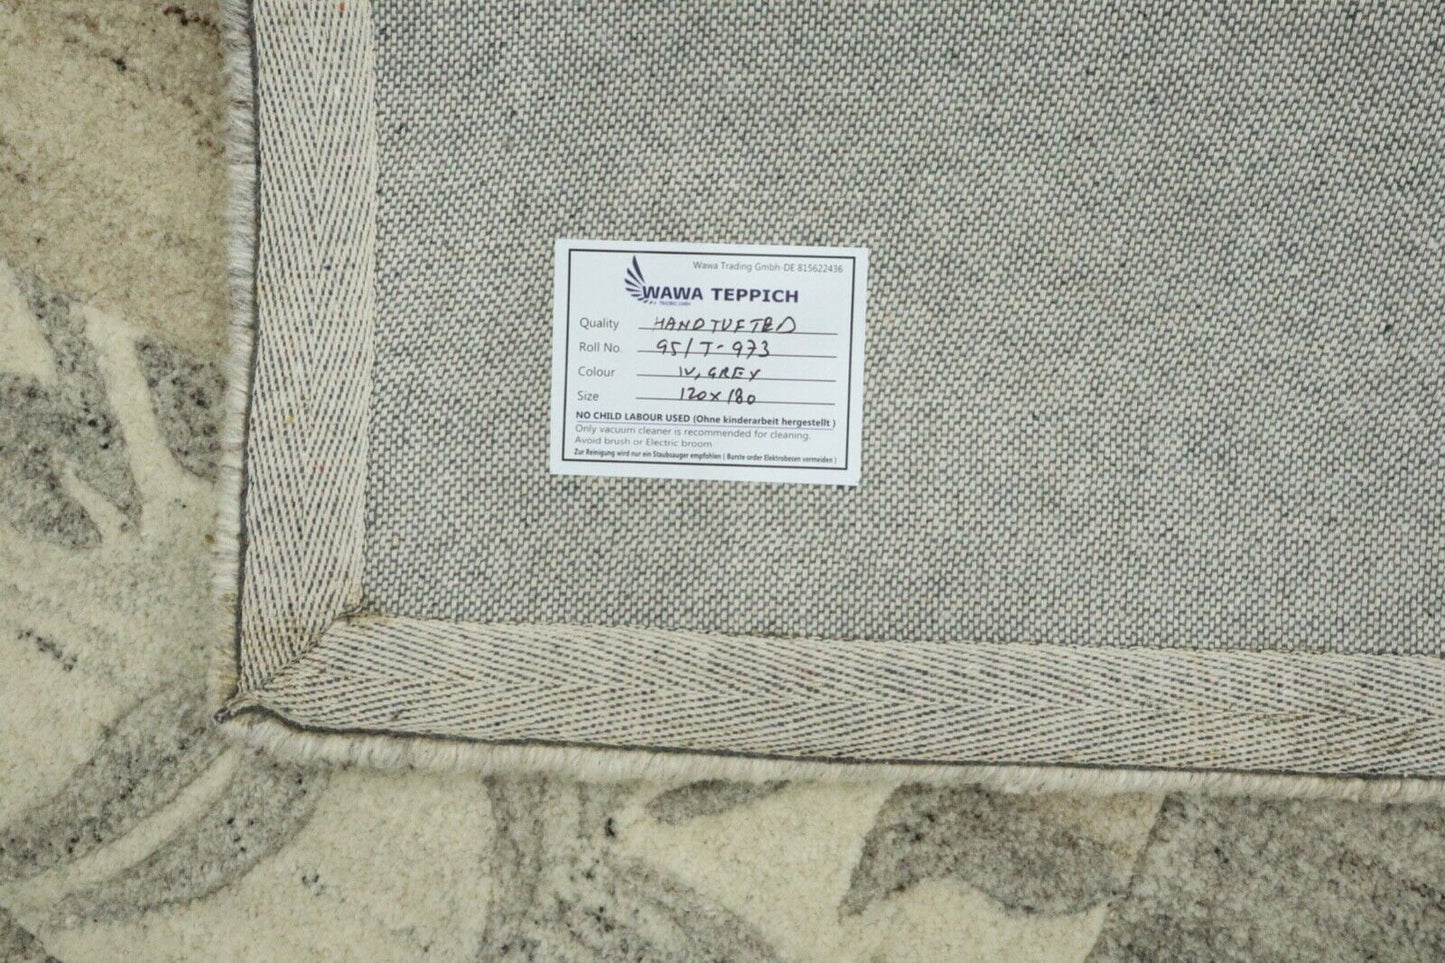 Grau Beige Orient Teppich 100% Wolle 120X180 cm Handarbeit Handgetuftet T973